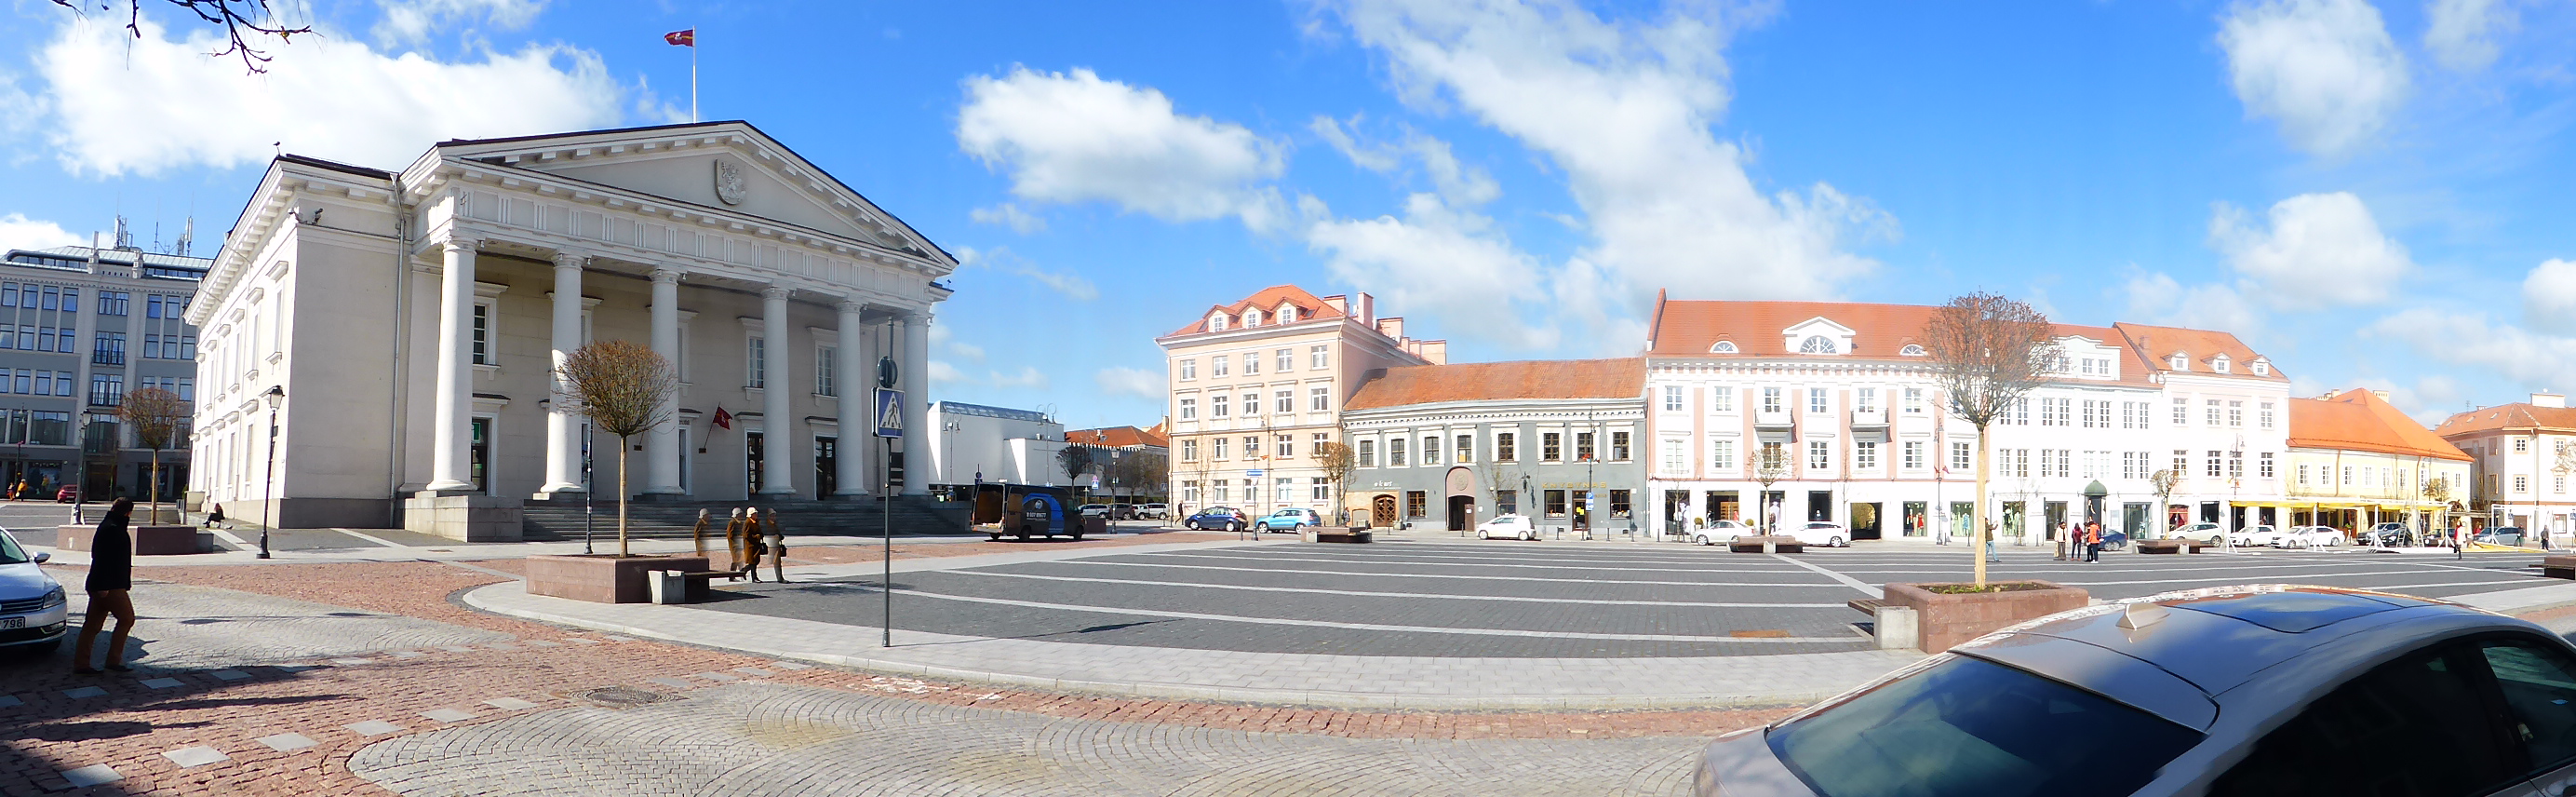 Rathaus mit Rathausplatz.